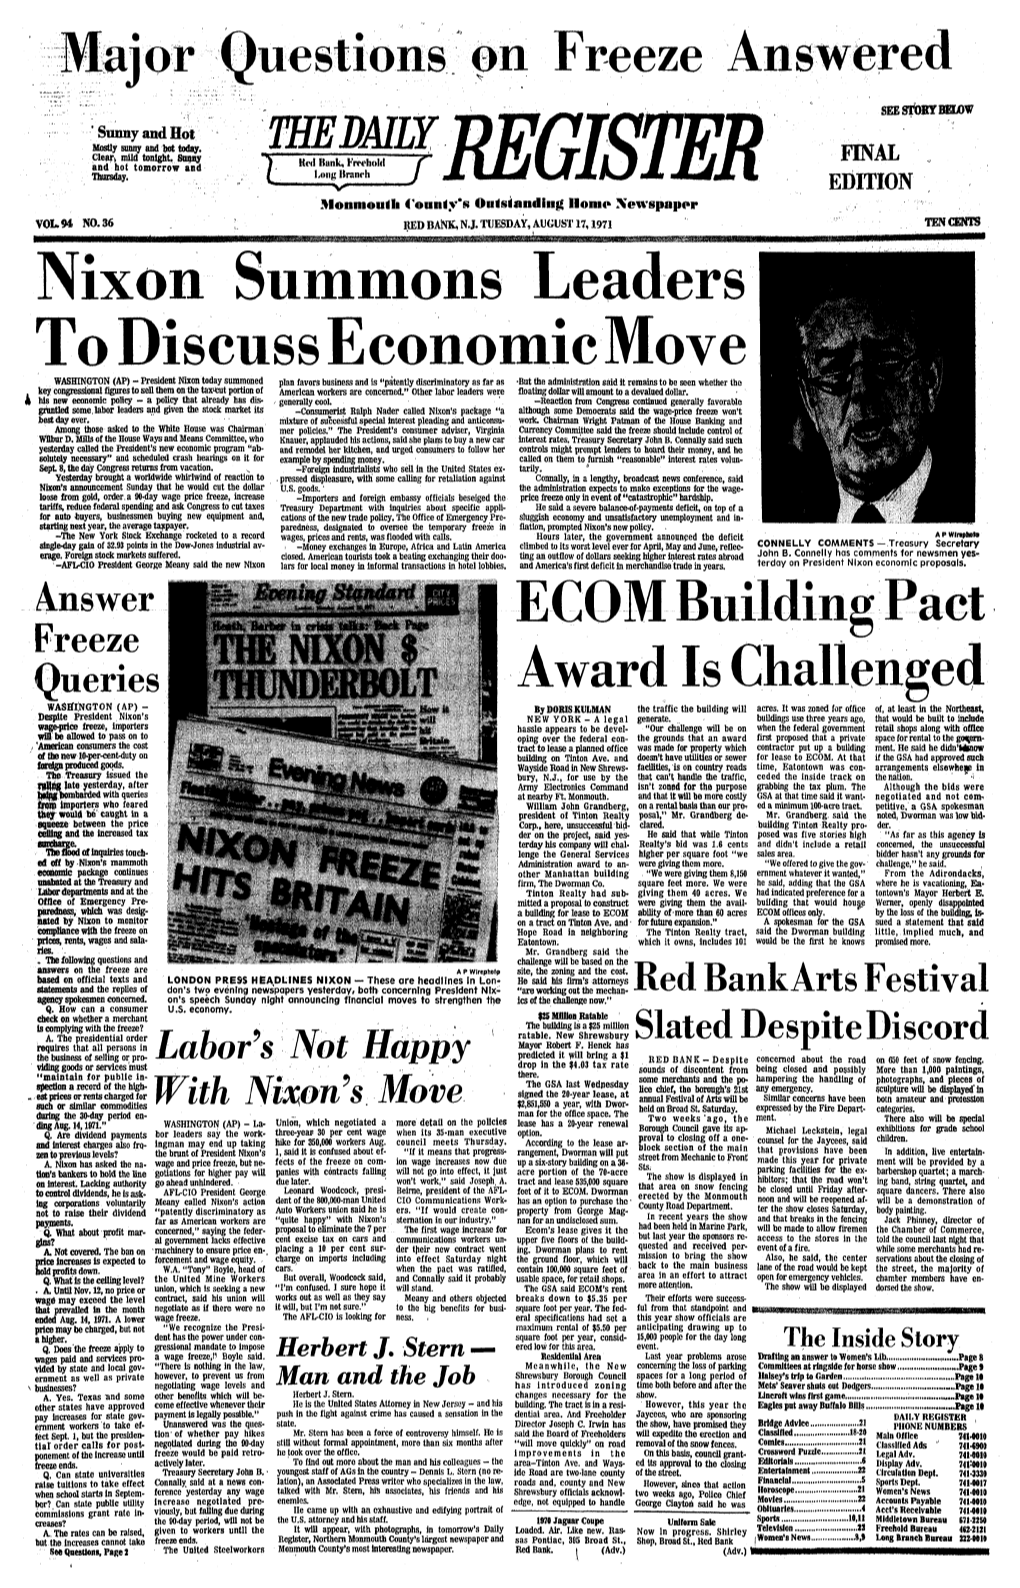 Nixon Summons Leaders to Discuss Economic Move